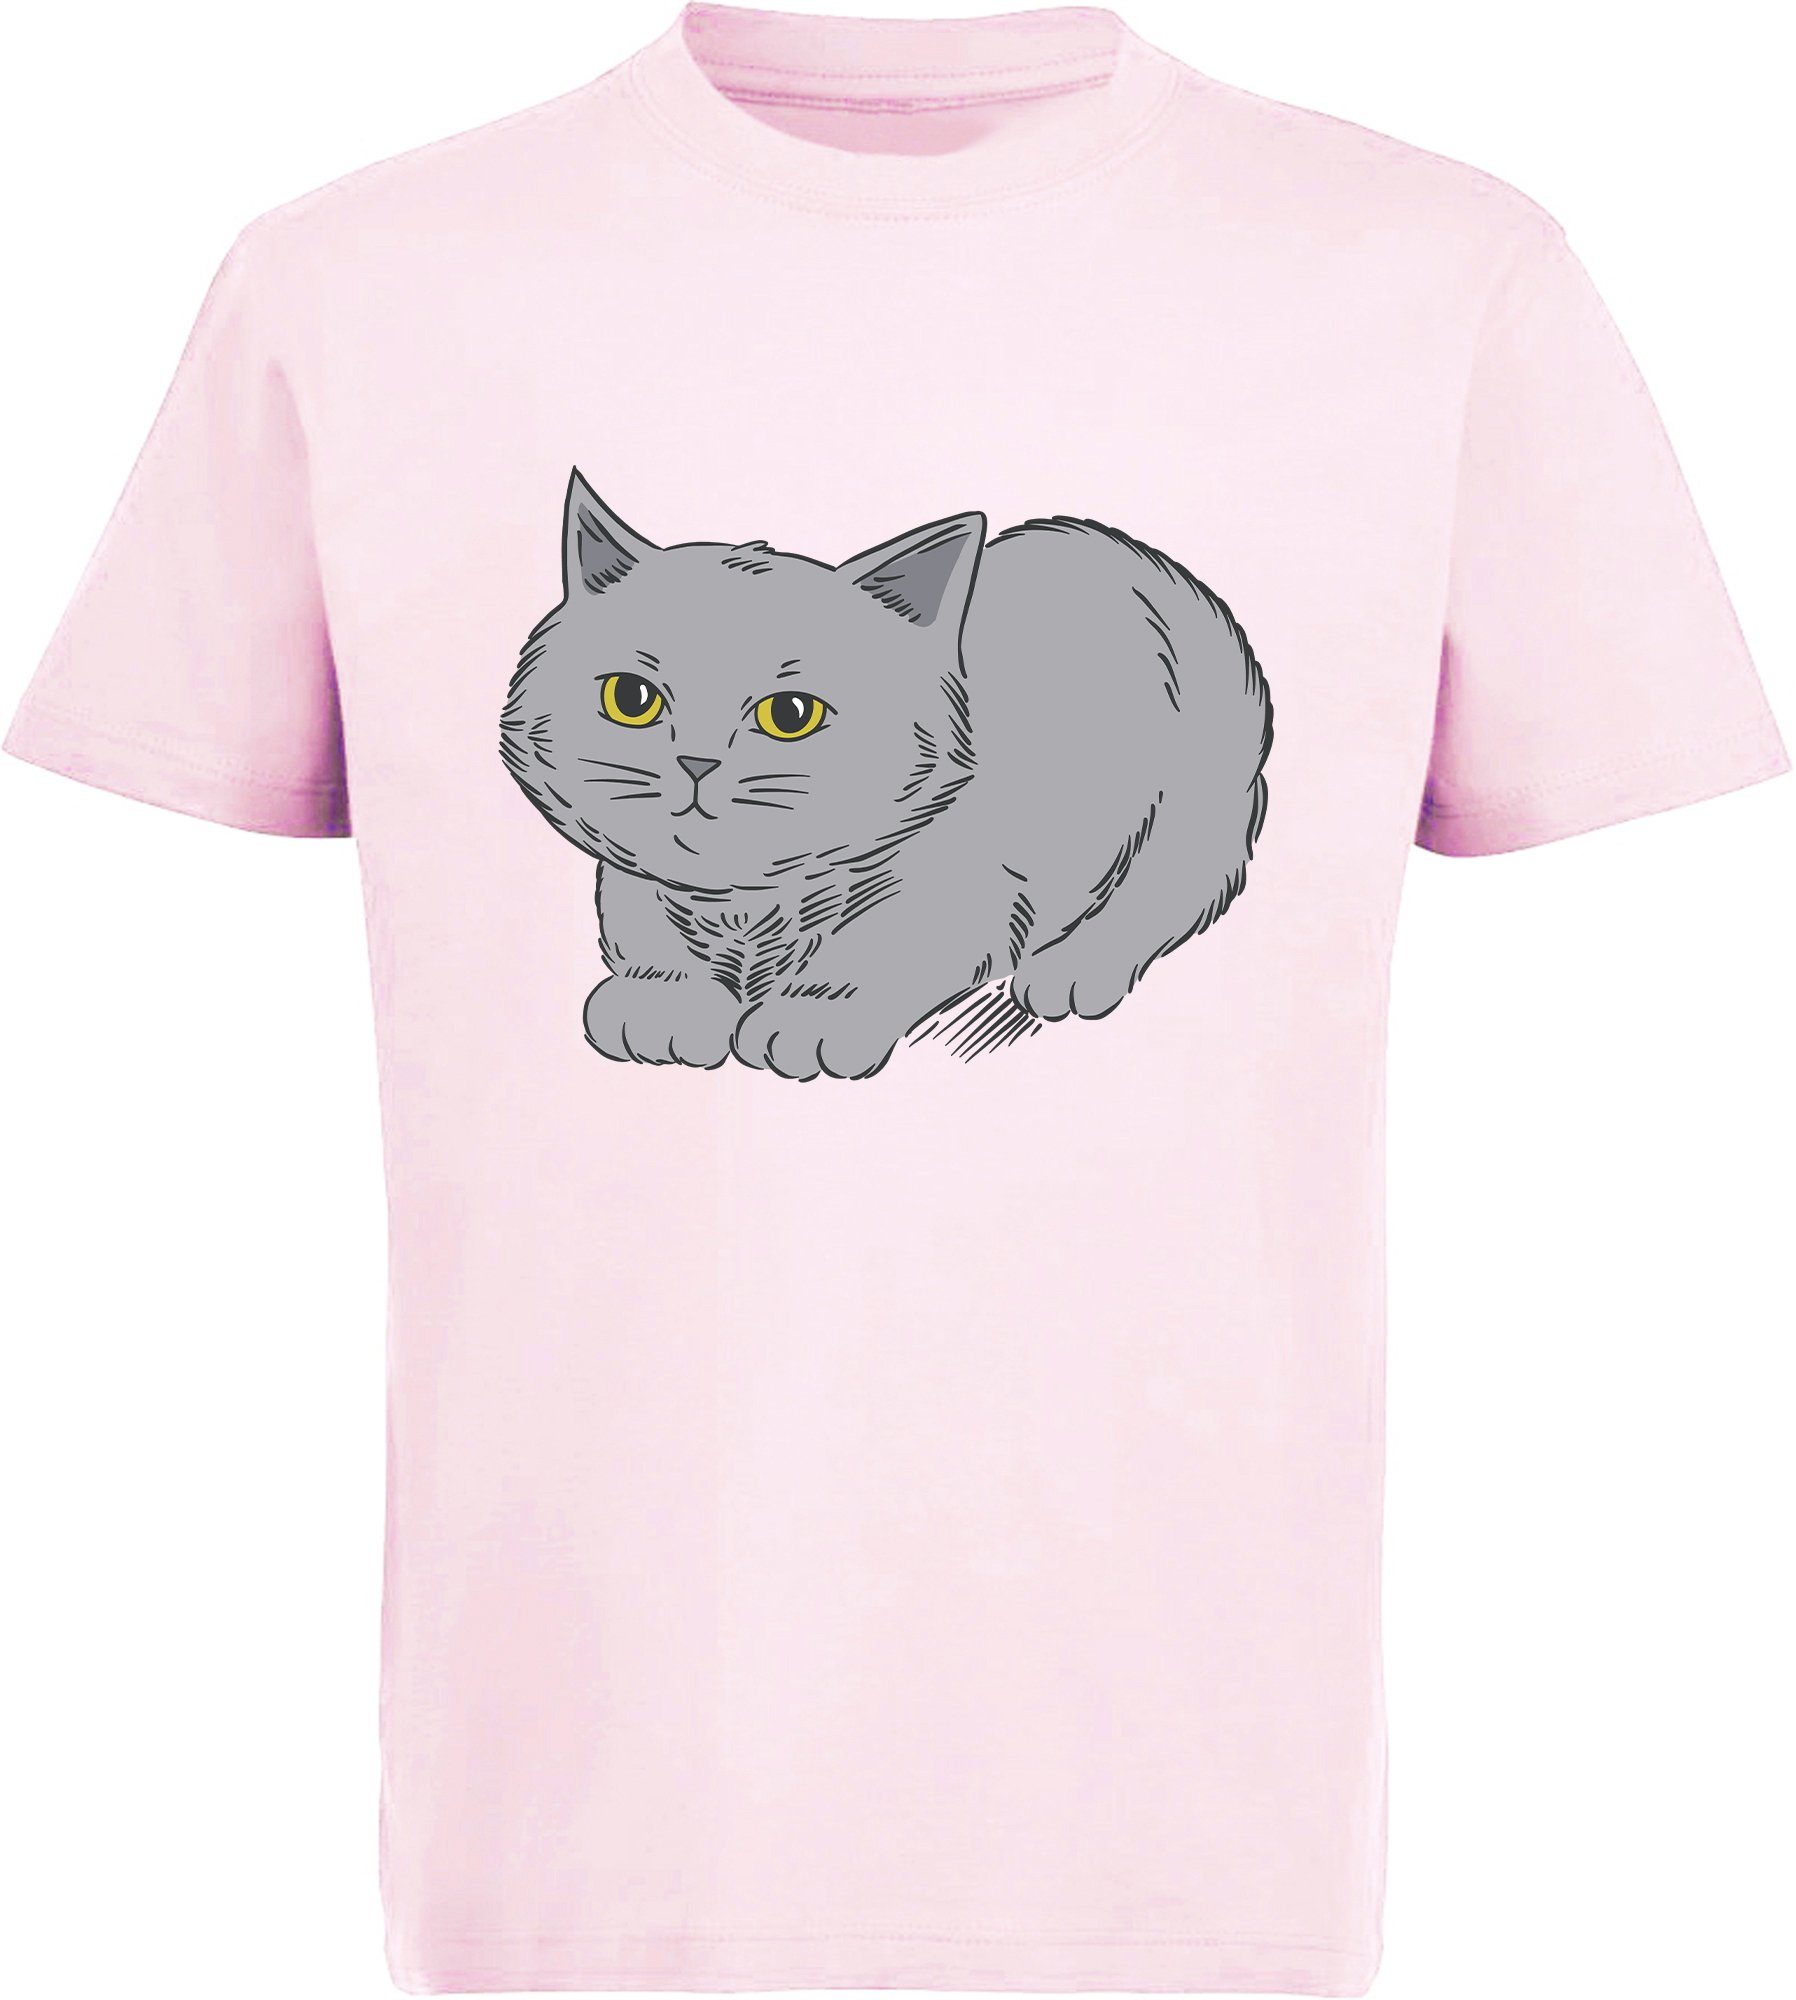 Mädchen rosa, schwarz, T-Shirt Print-Shirt MyDesign24 i107 grauen mit Baumwollshirt niedlicher rot, mit bedrucktes Katze, weiß, Katze